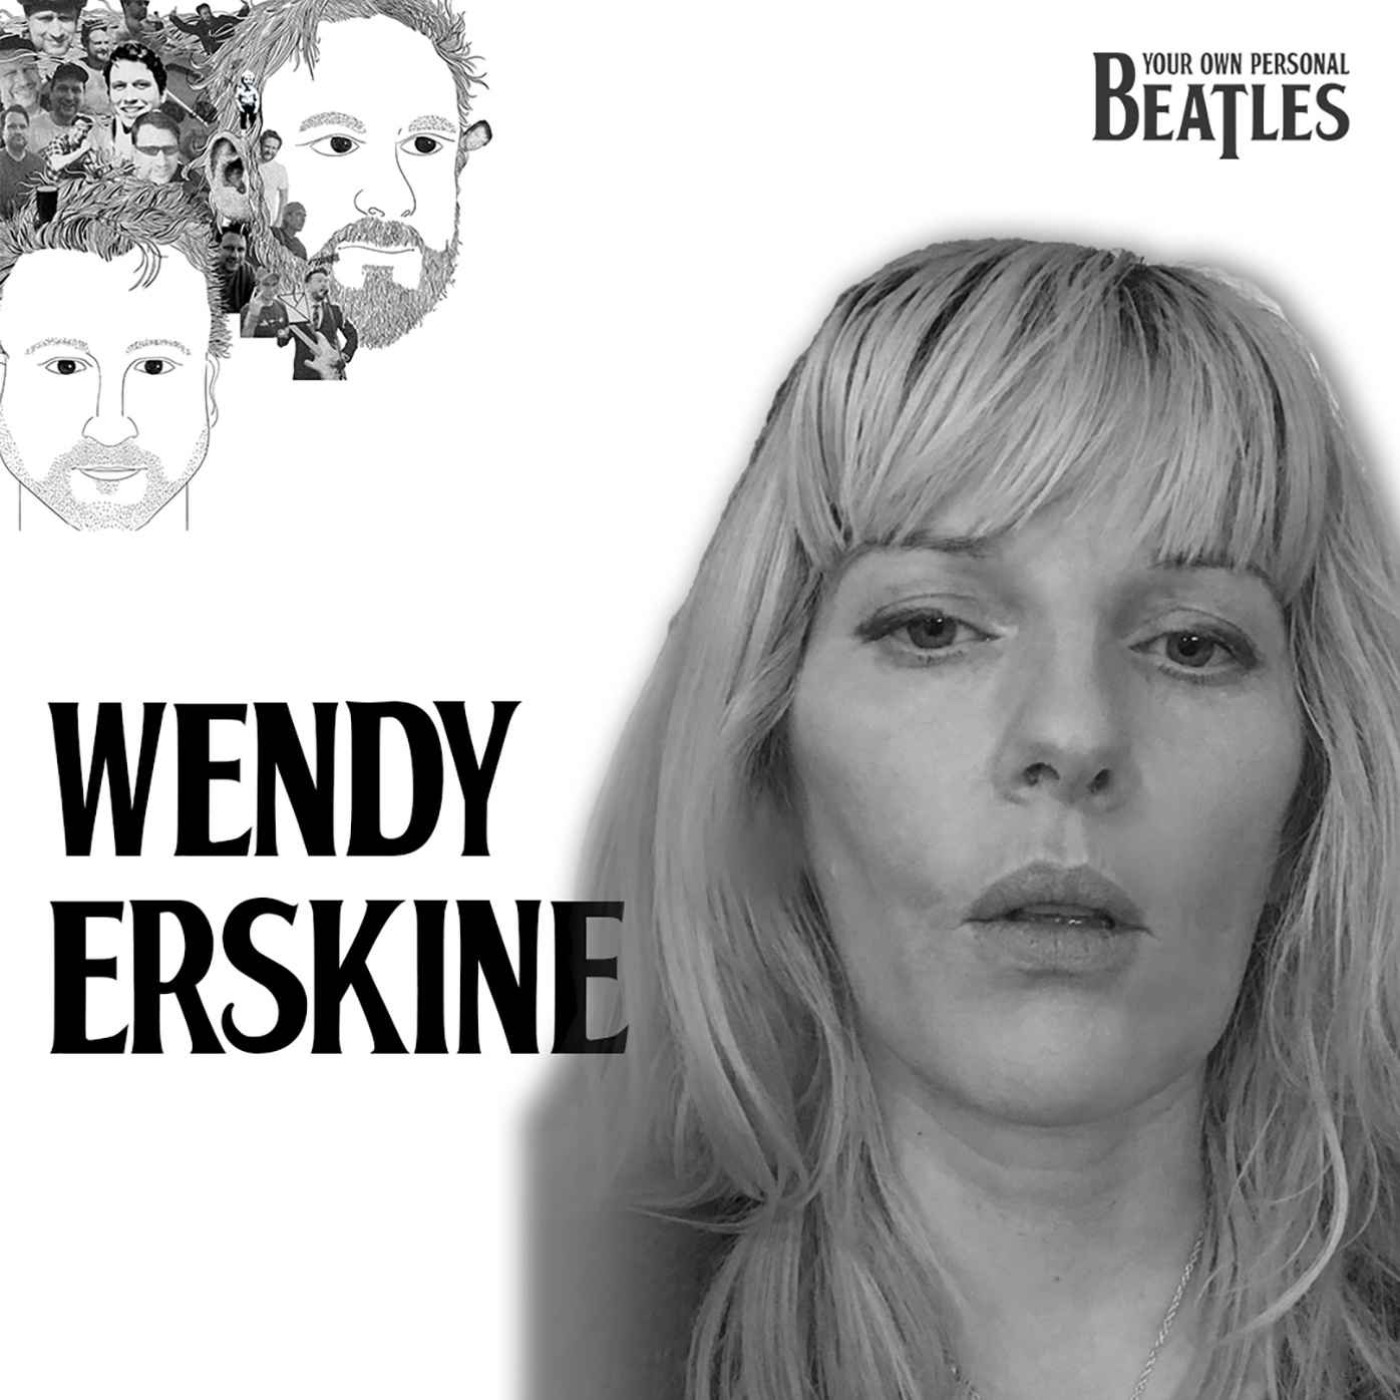 Wendy Erskine's Personal Beatles